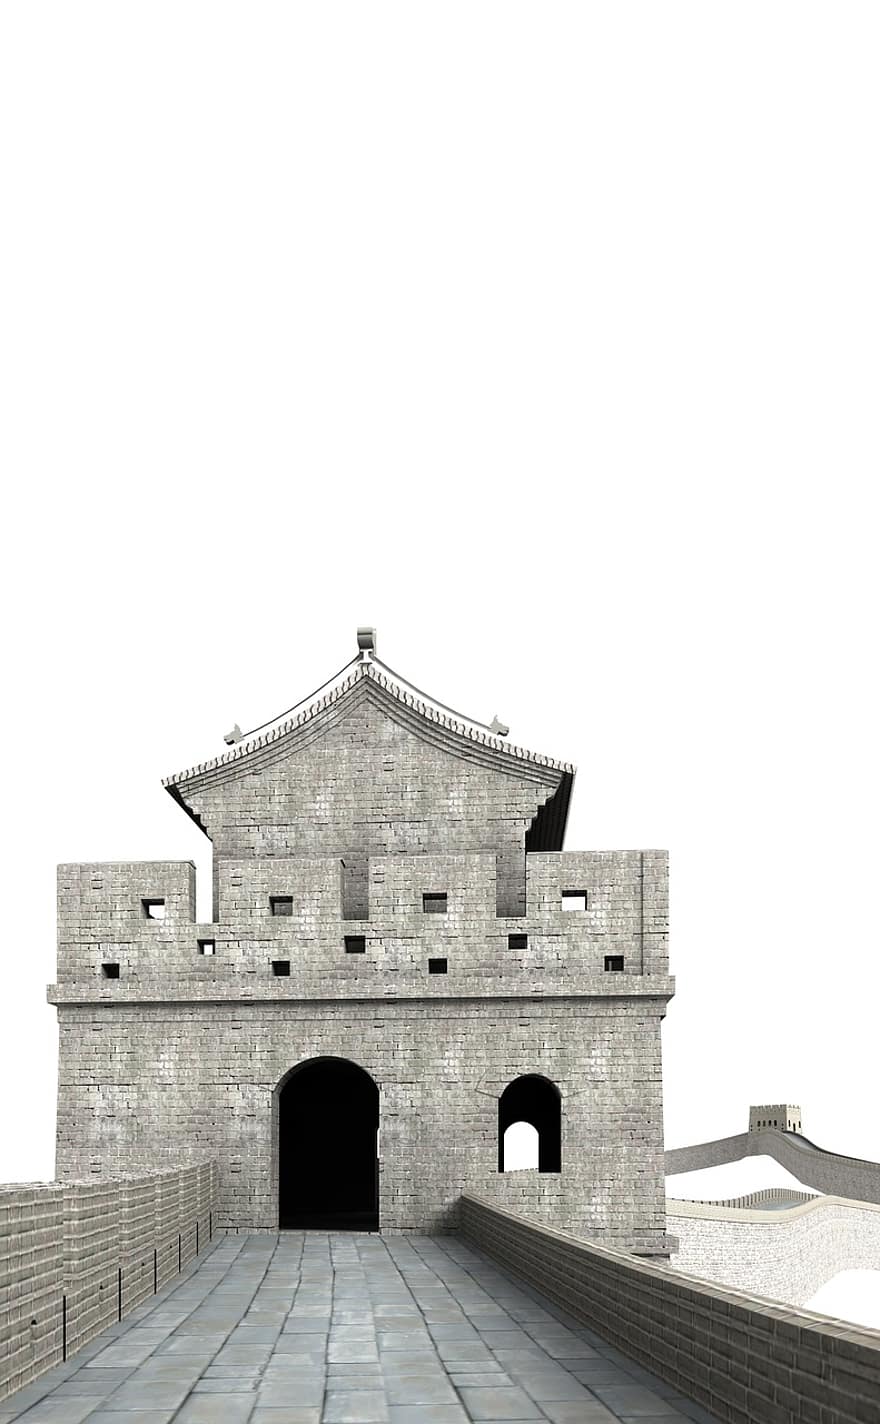 groot, muur, China, gebouw, kerk, interessante plaatsen, historisch, toeristen, aantrekkelijkheid, mijlpaal, facade